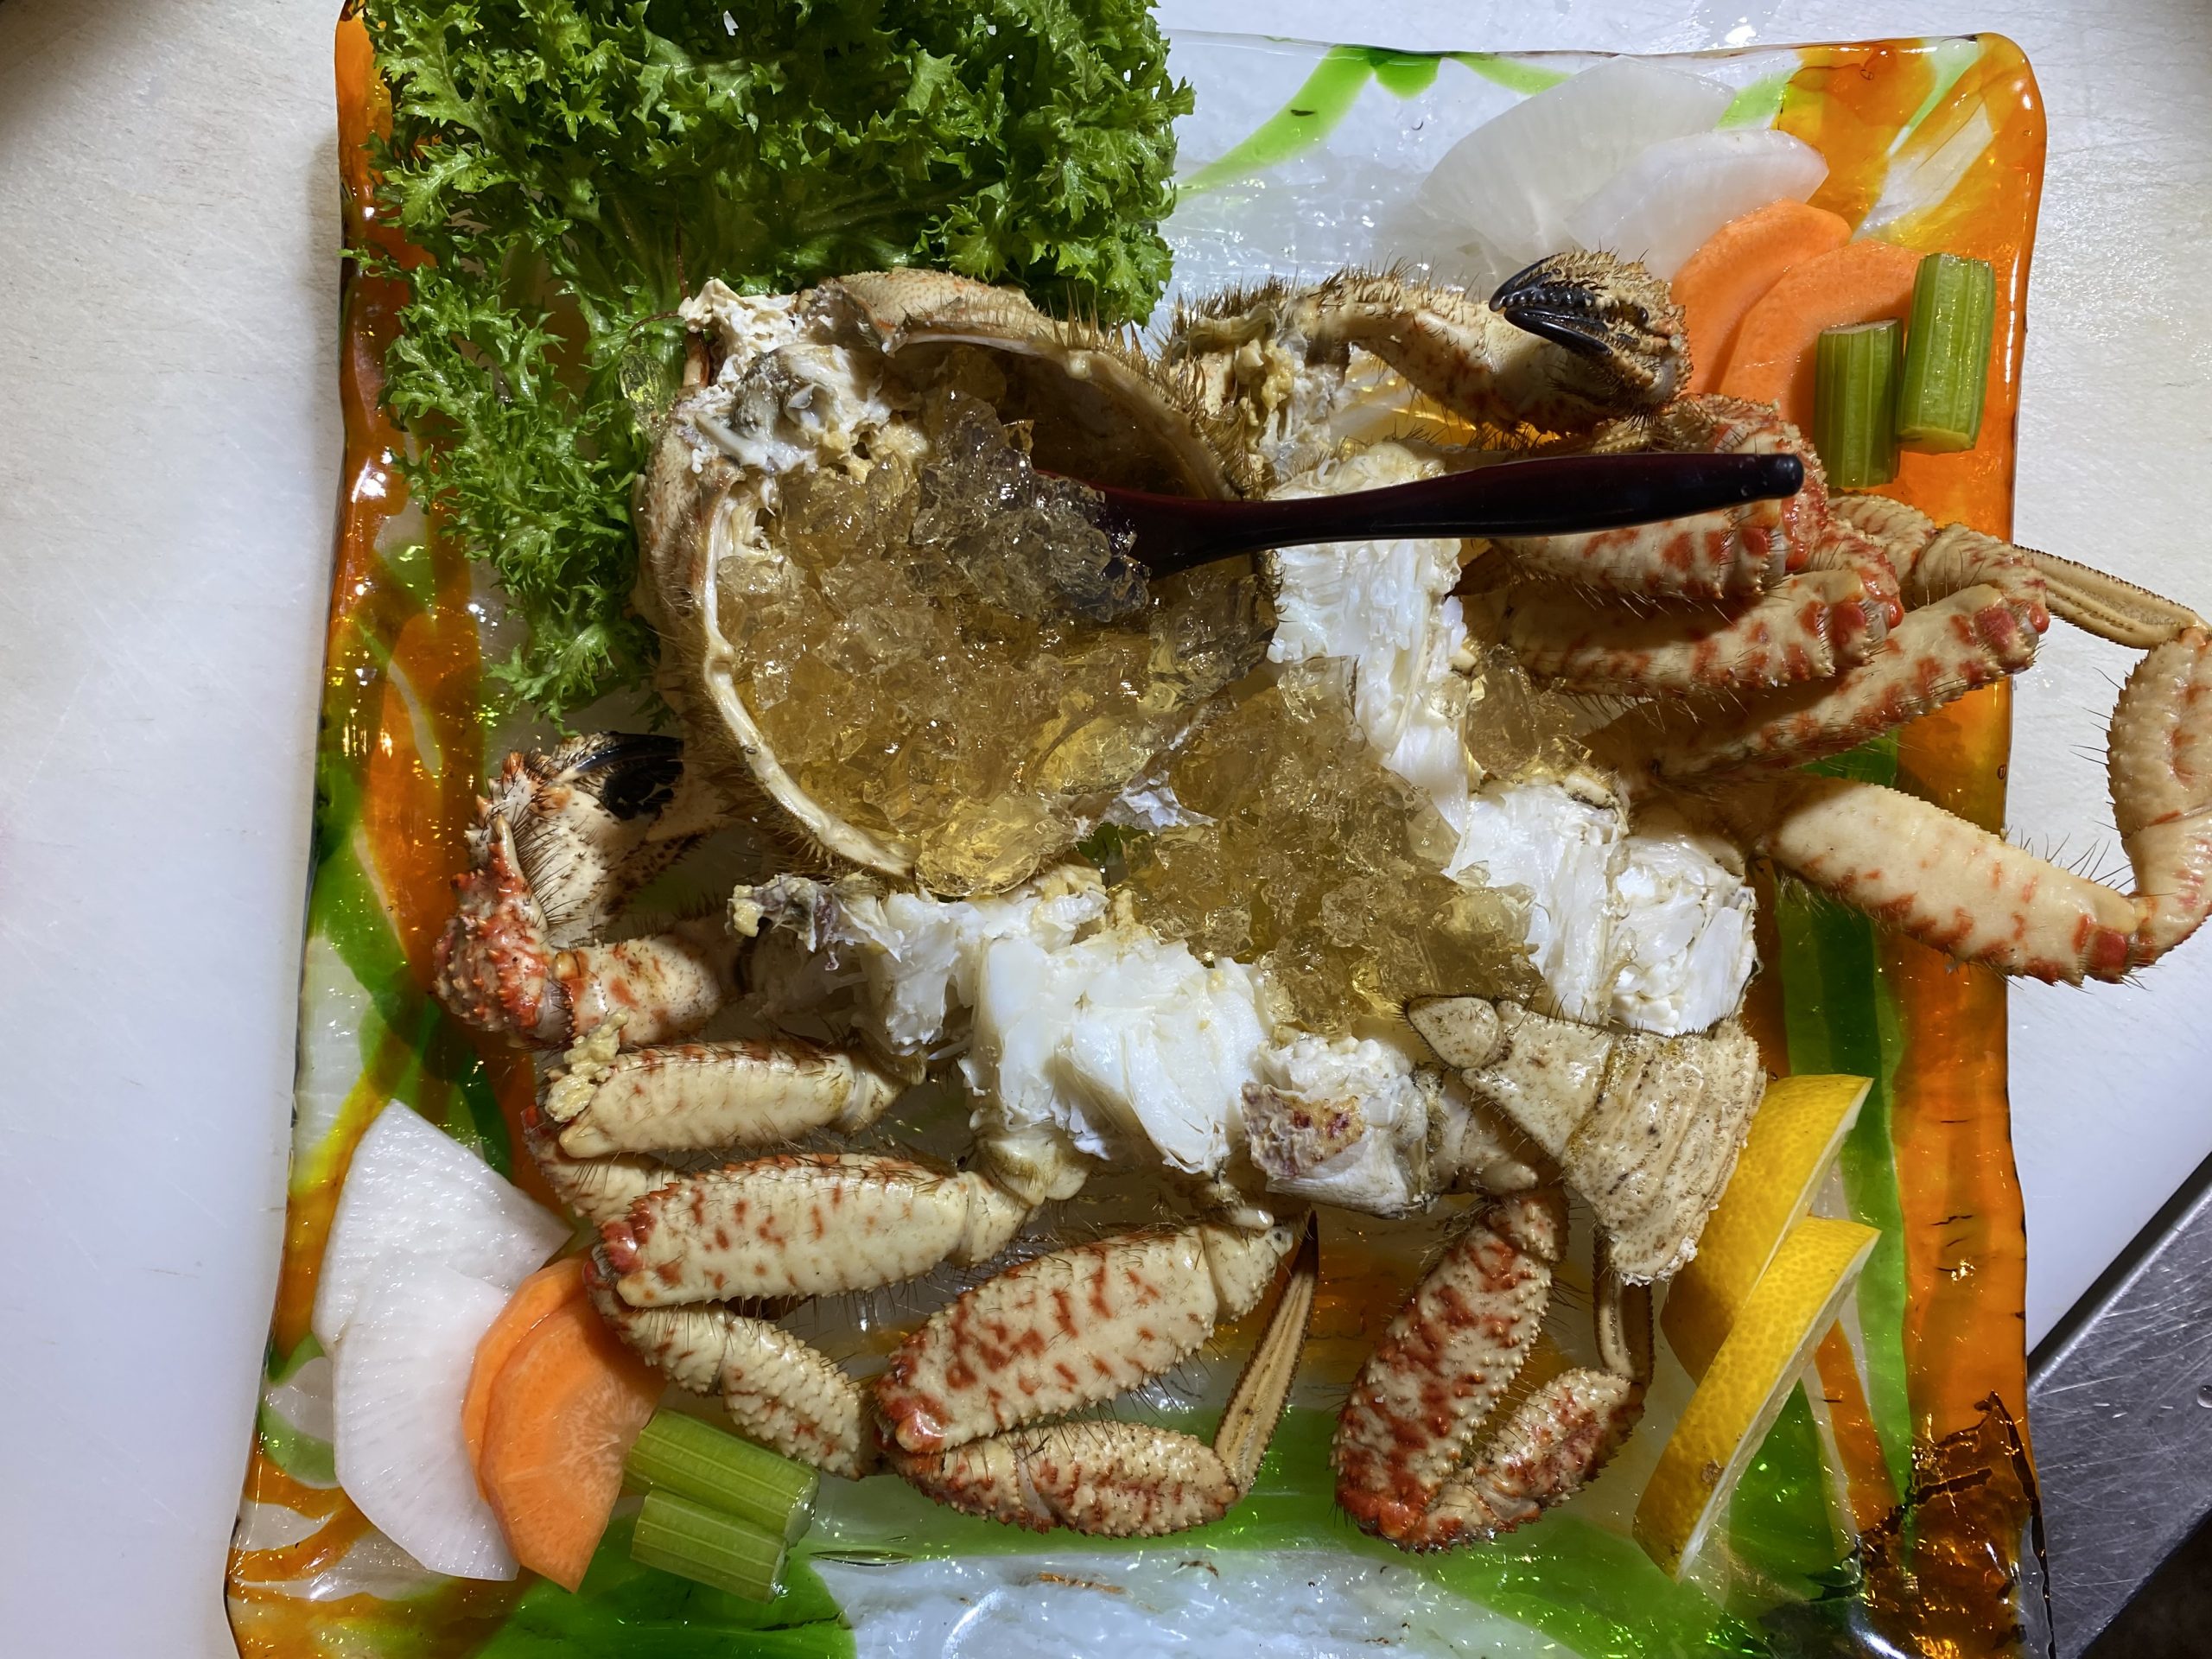 活きくりがにの塩蒸し自家製三杯酢ゼリー添え 地物の野菜も一緒に 海の恵み 食の底力 Japan 公式レシピサイト